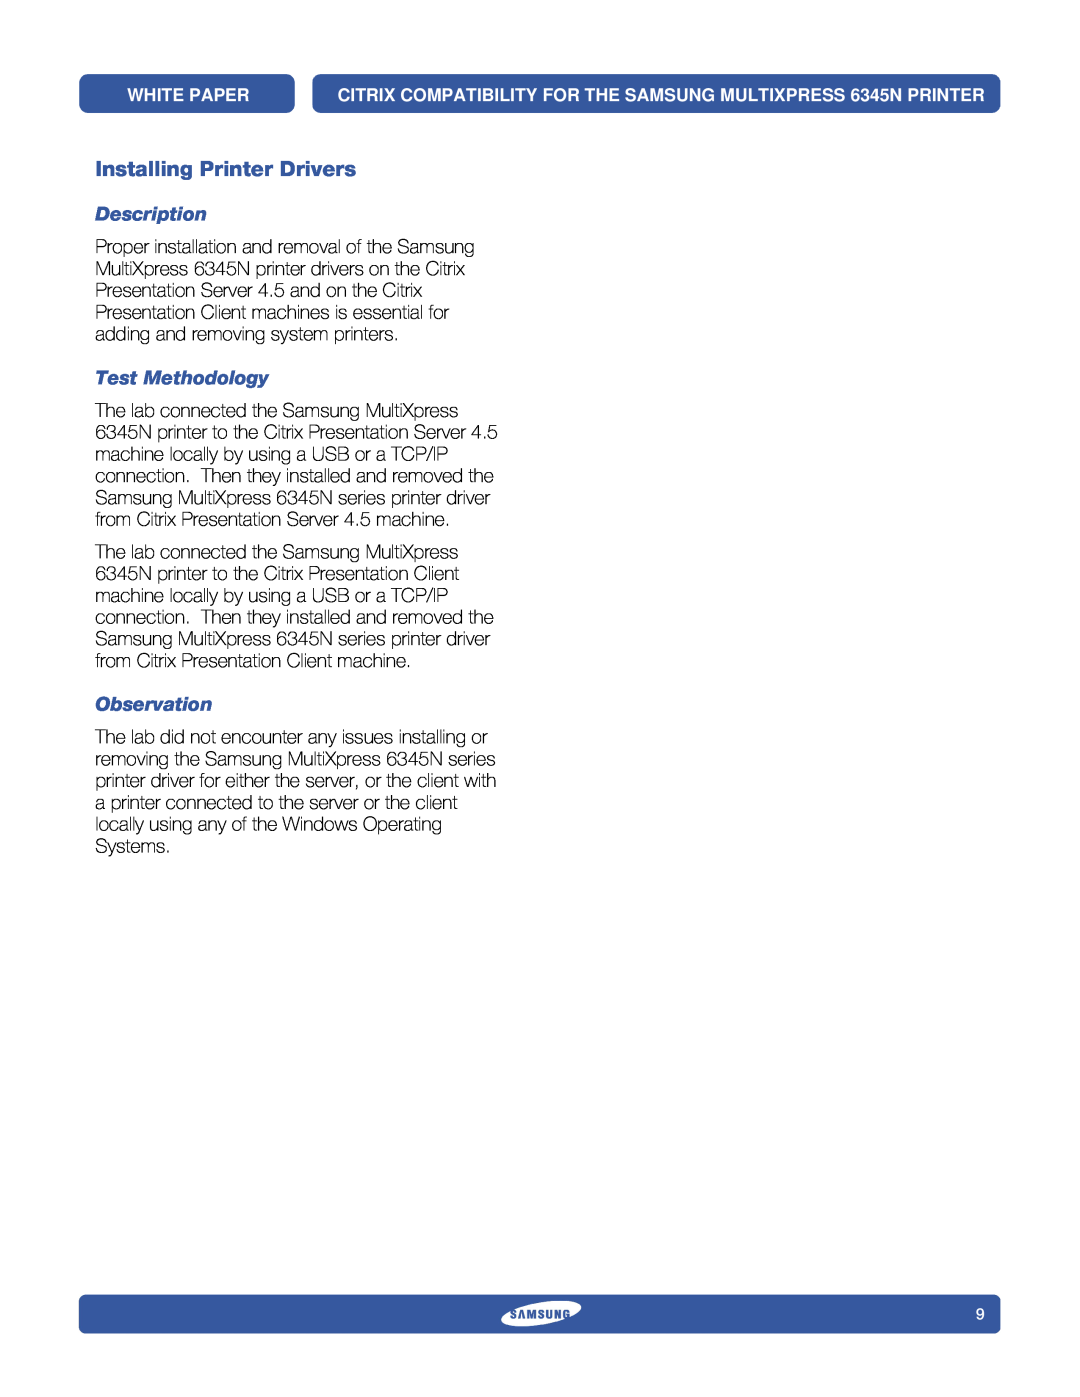 Samsung 6345N specifications Installing Printer Drivers, Description, Test Methodology, Observation 